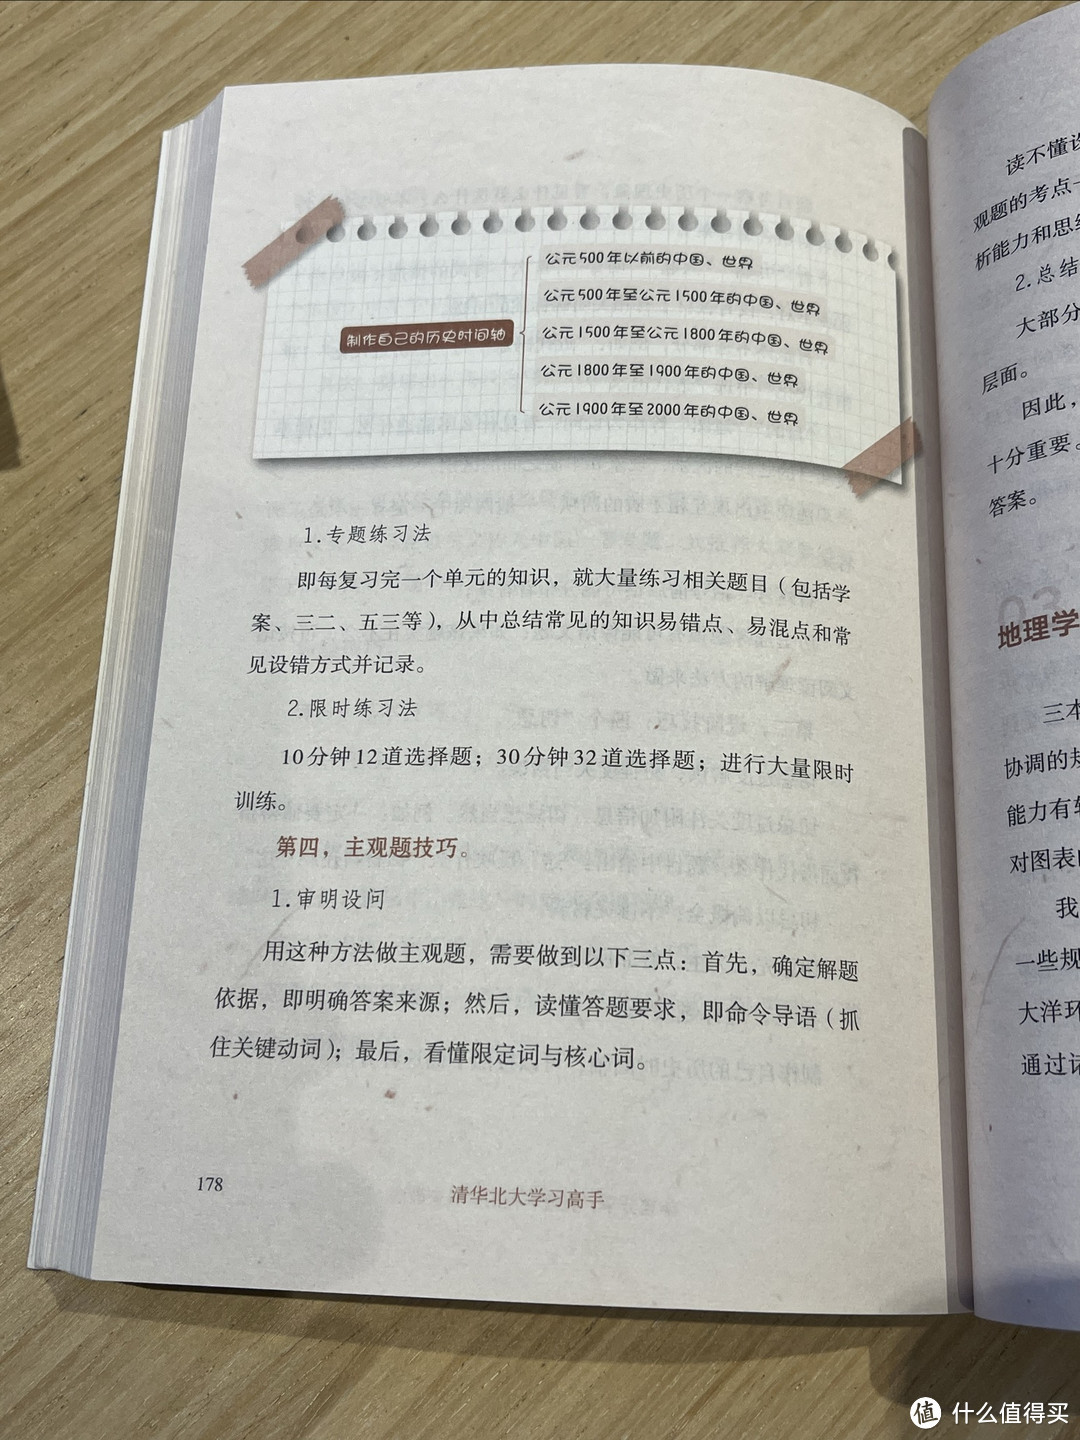 分享最近翻看的一本书：《清华北大学习高手》